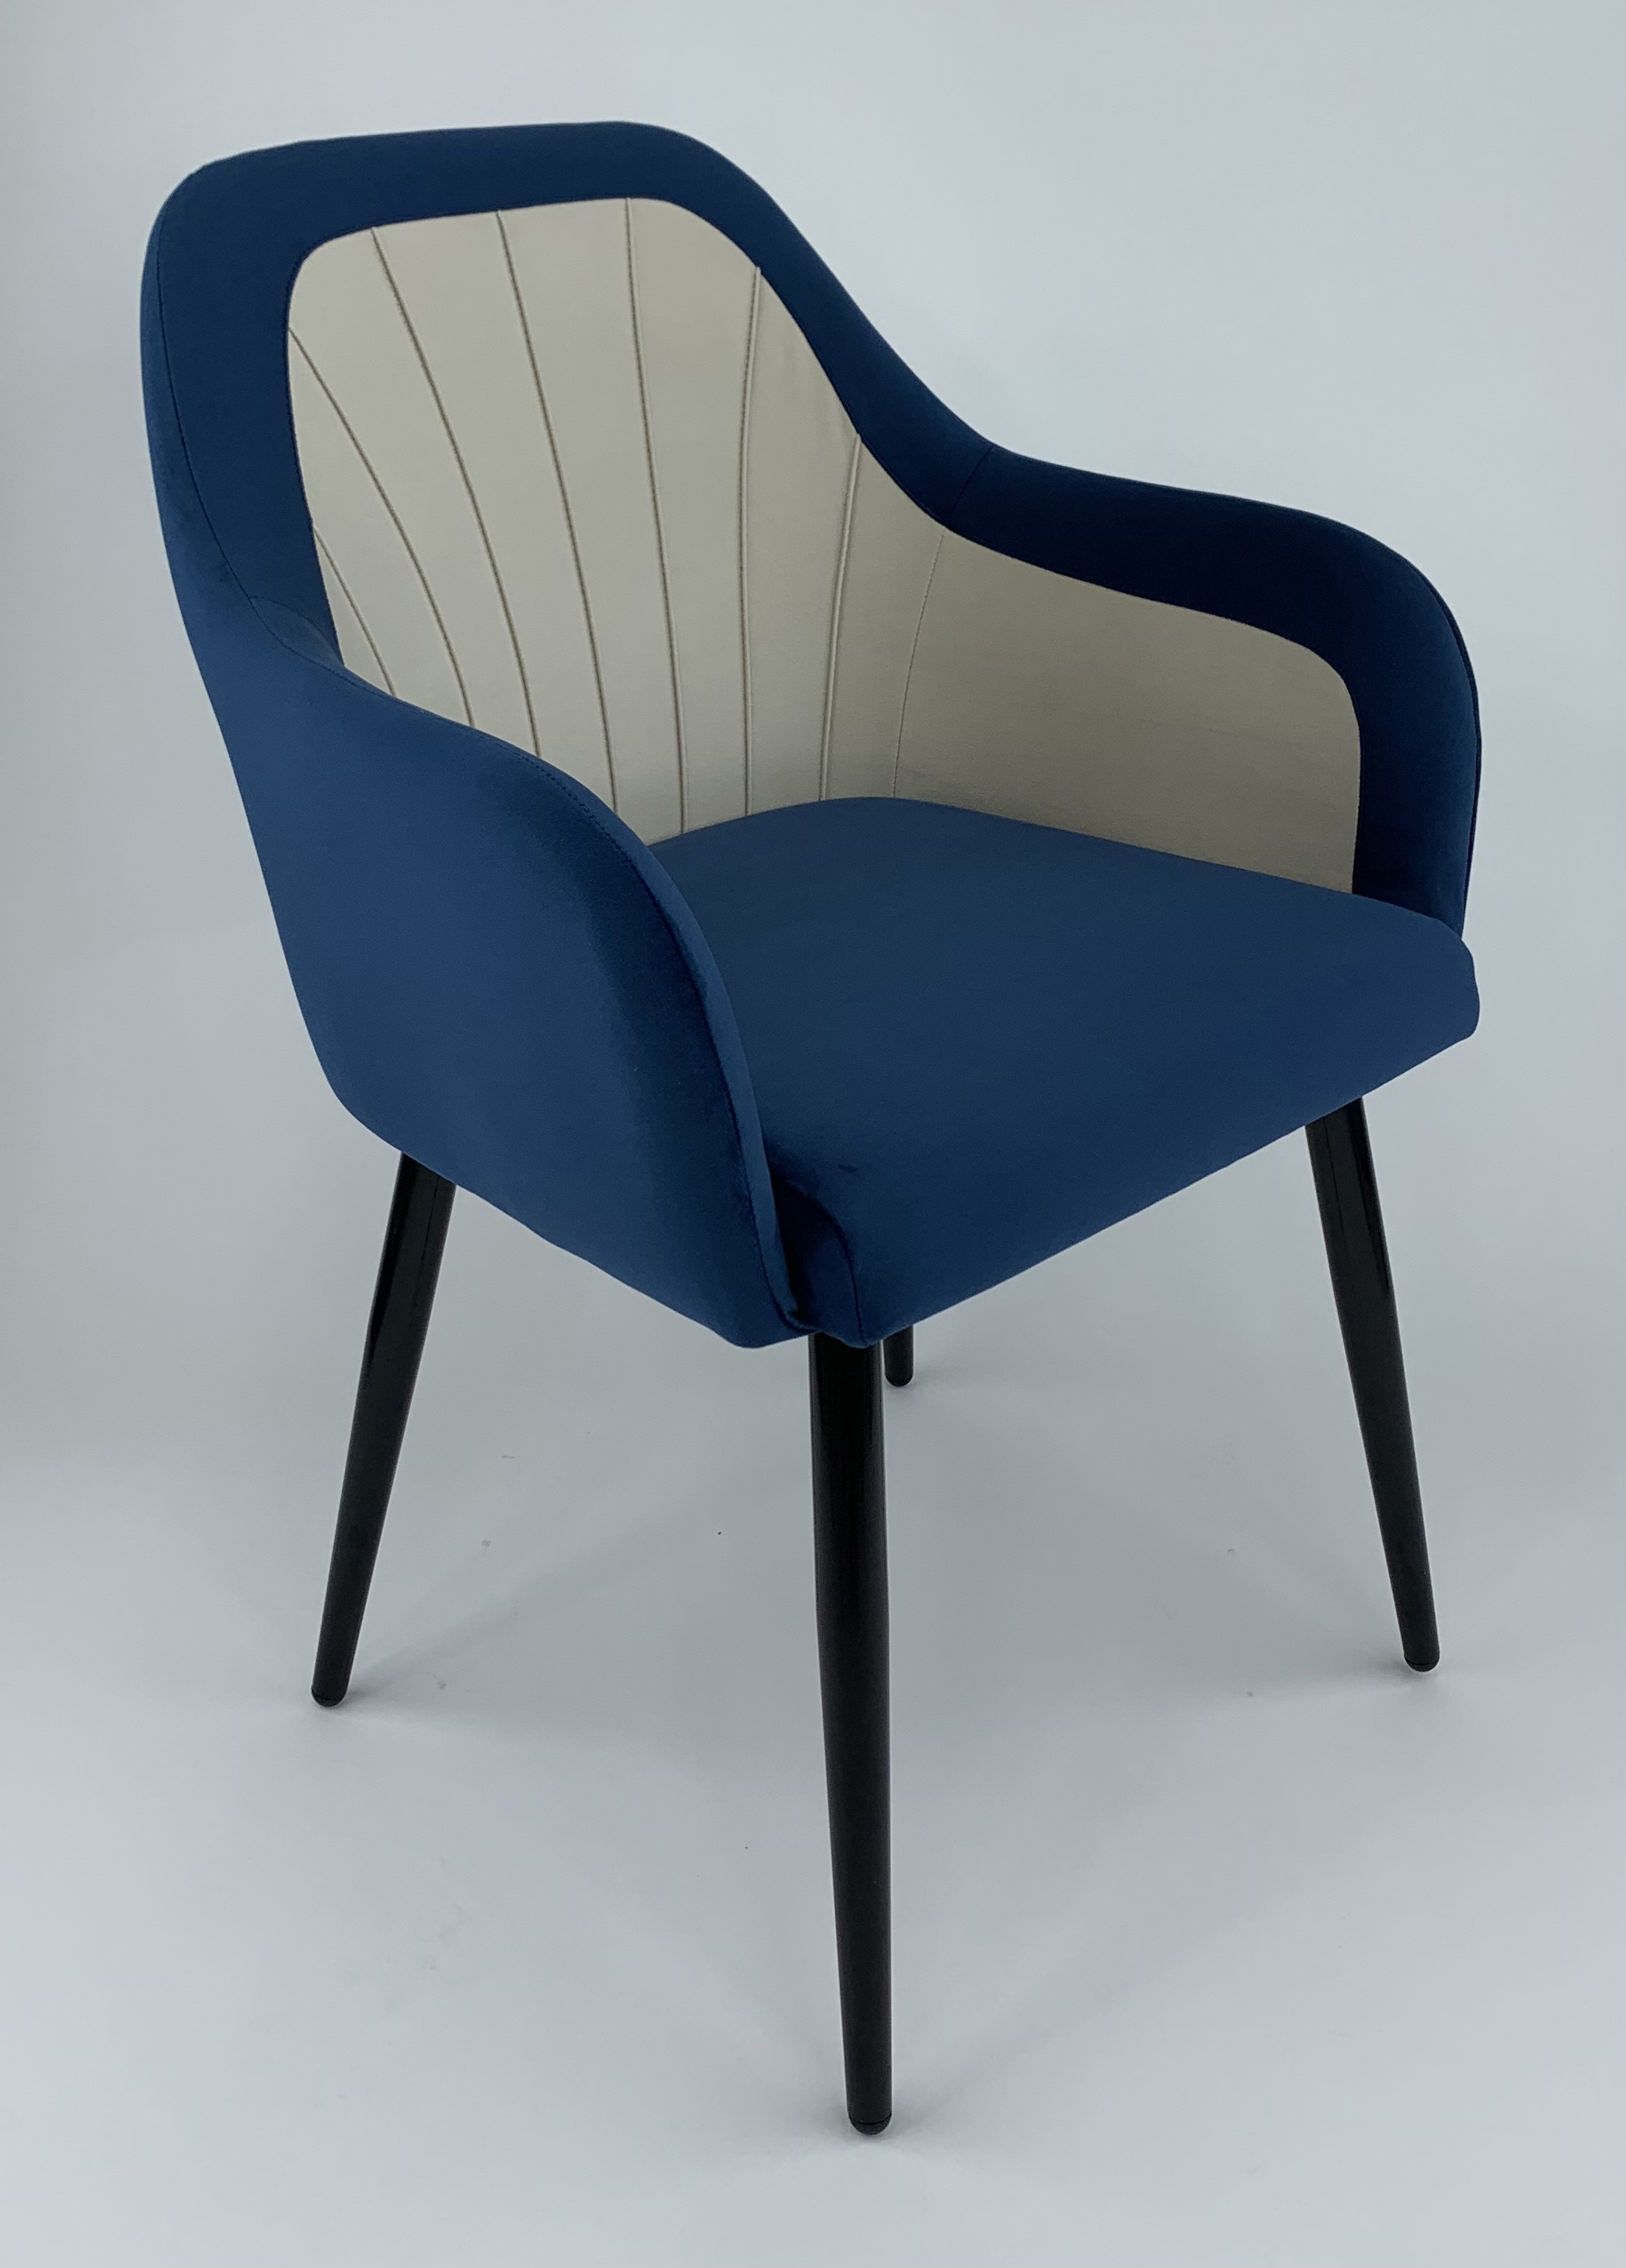 90203158 Стул-кресло мебель для столовой/гостинной/спальни цвет синий Агат STLM-0131106 MILAVIO